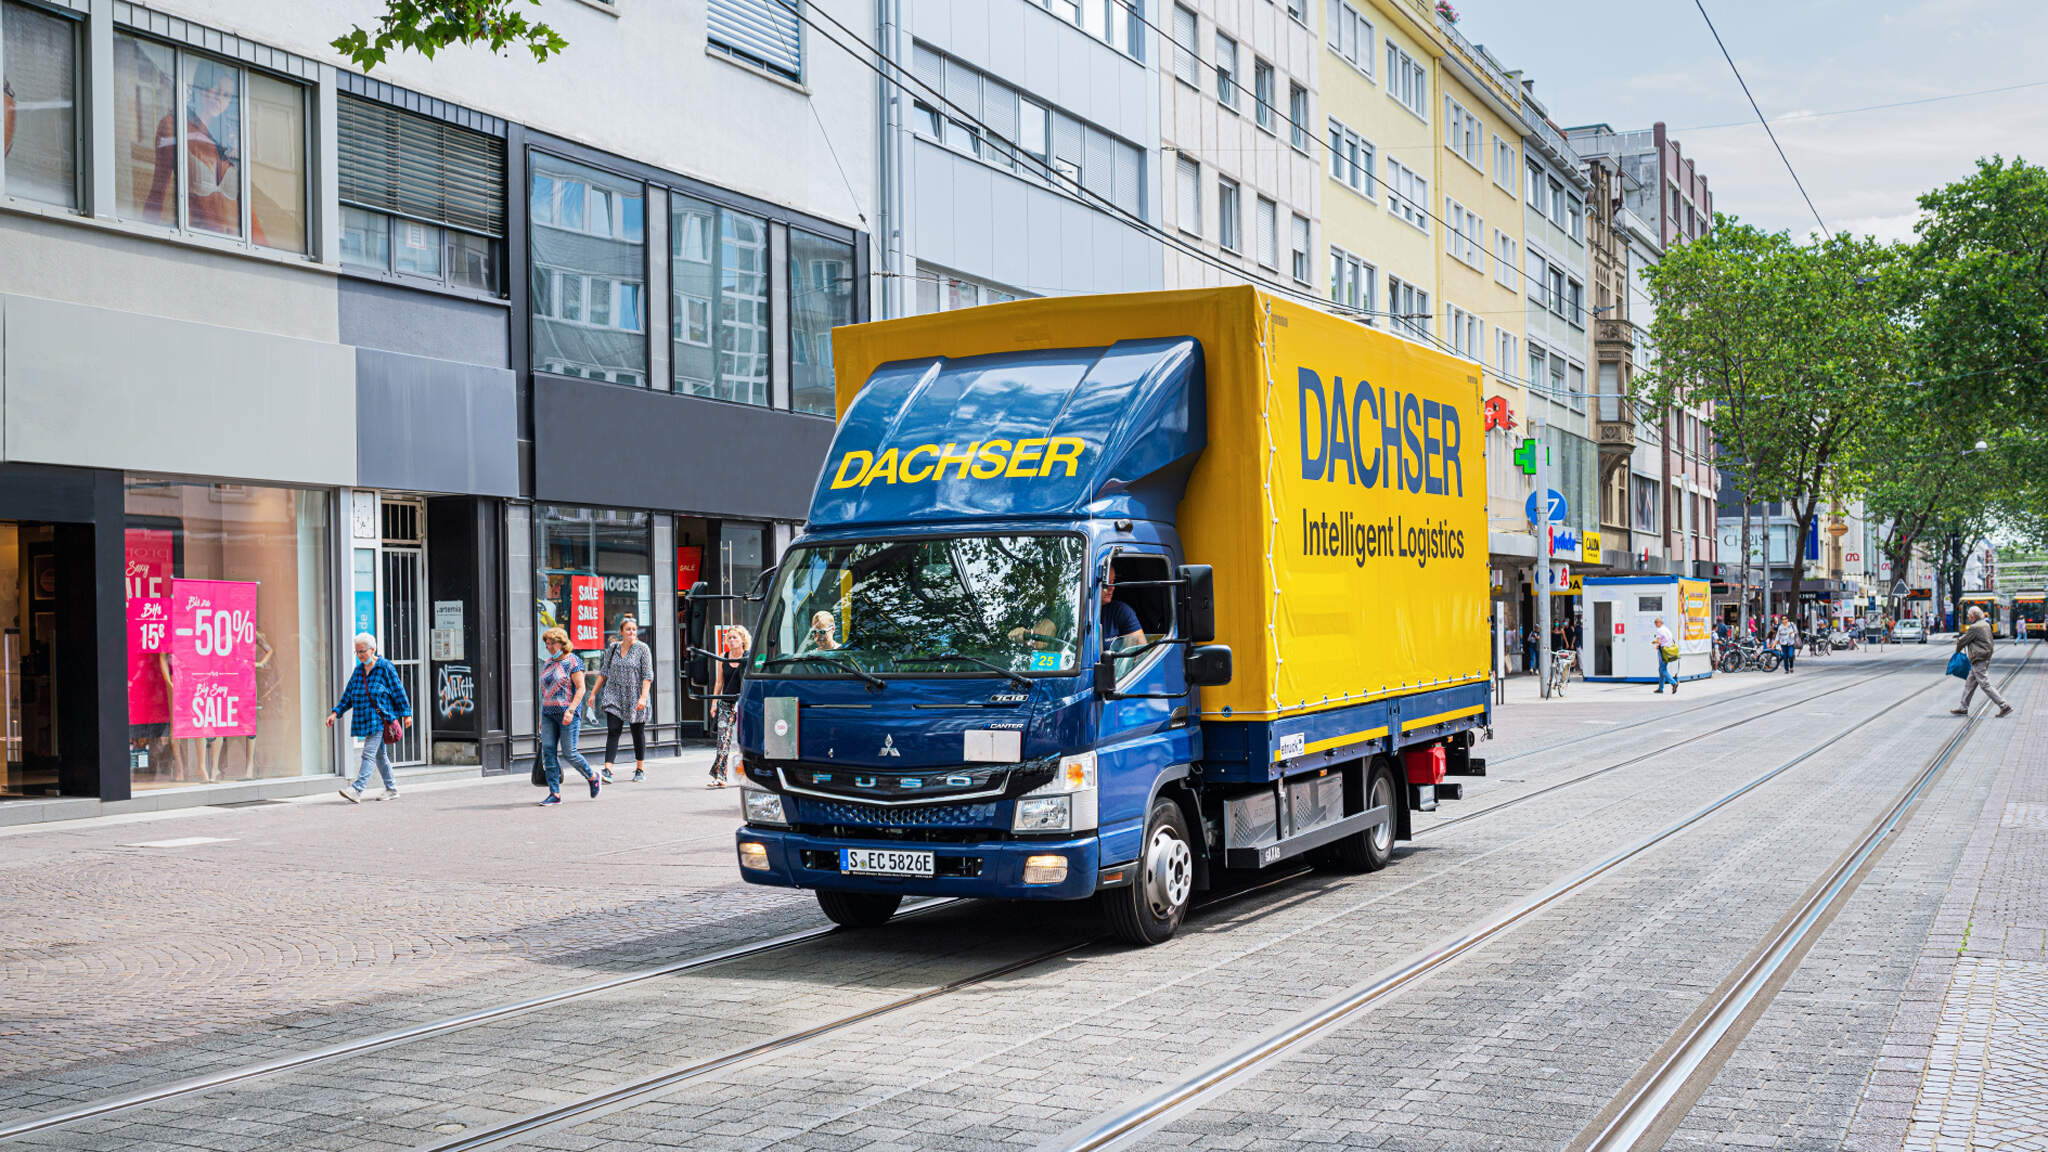 DACHSER Emission-Free Delivery ya está disponible en doce áreas de entrega definidas en el centro de la ciudad.